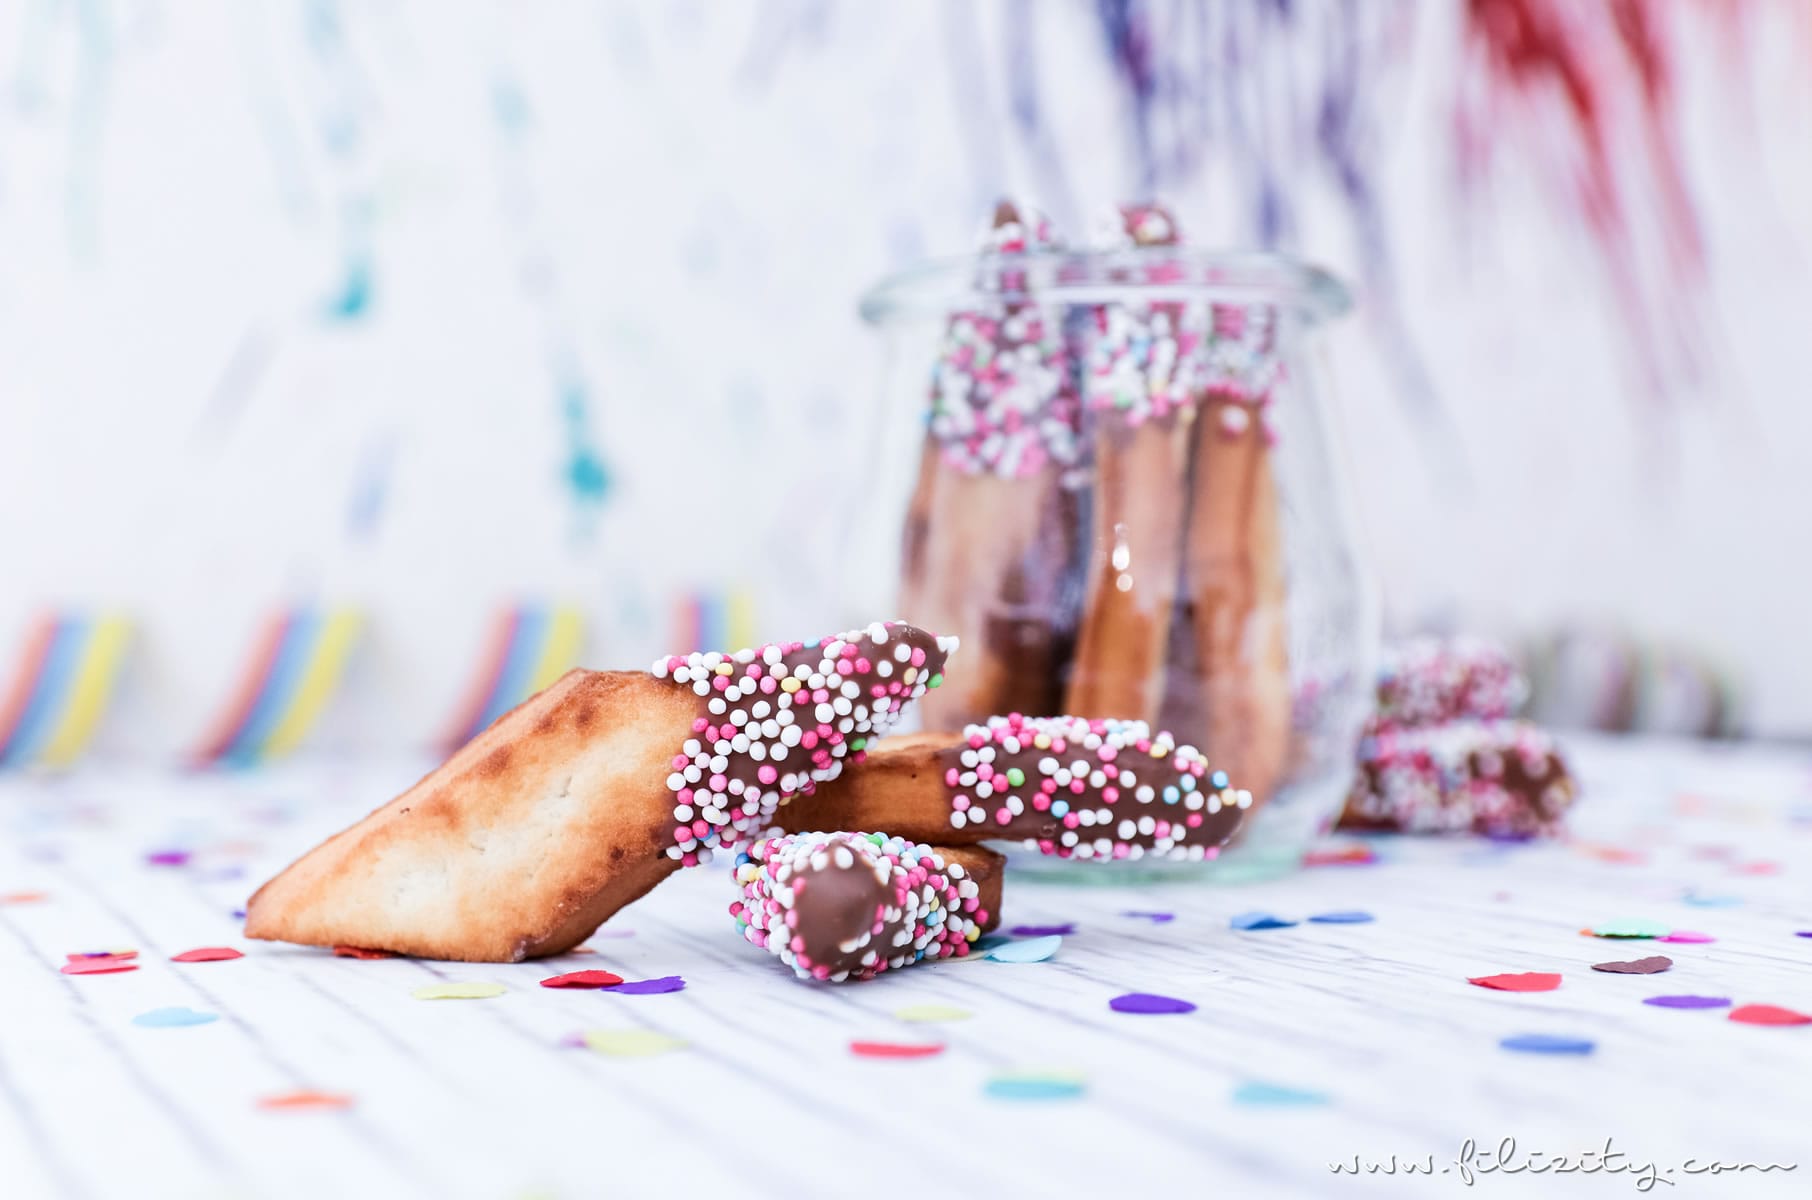 Schnelles Karnevals-Rezept: Schmalzgebäck wie Chiacchere mit Schokolade und „Konfetti“ | Filizity.com | Food-Blog aus dem Rheinland #karneval #fasching #helau #alaaf